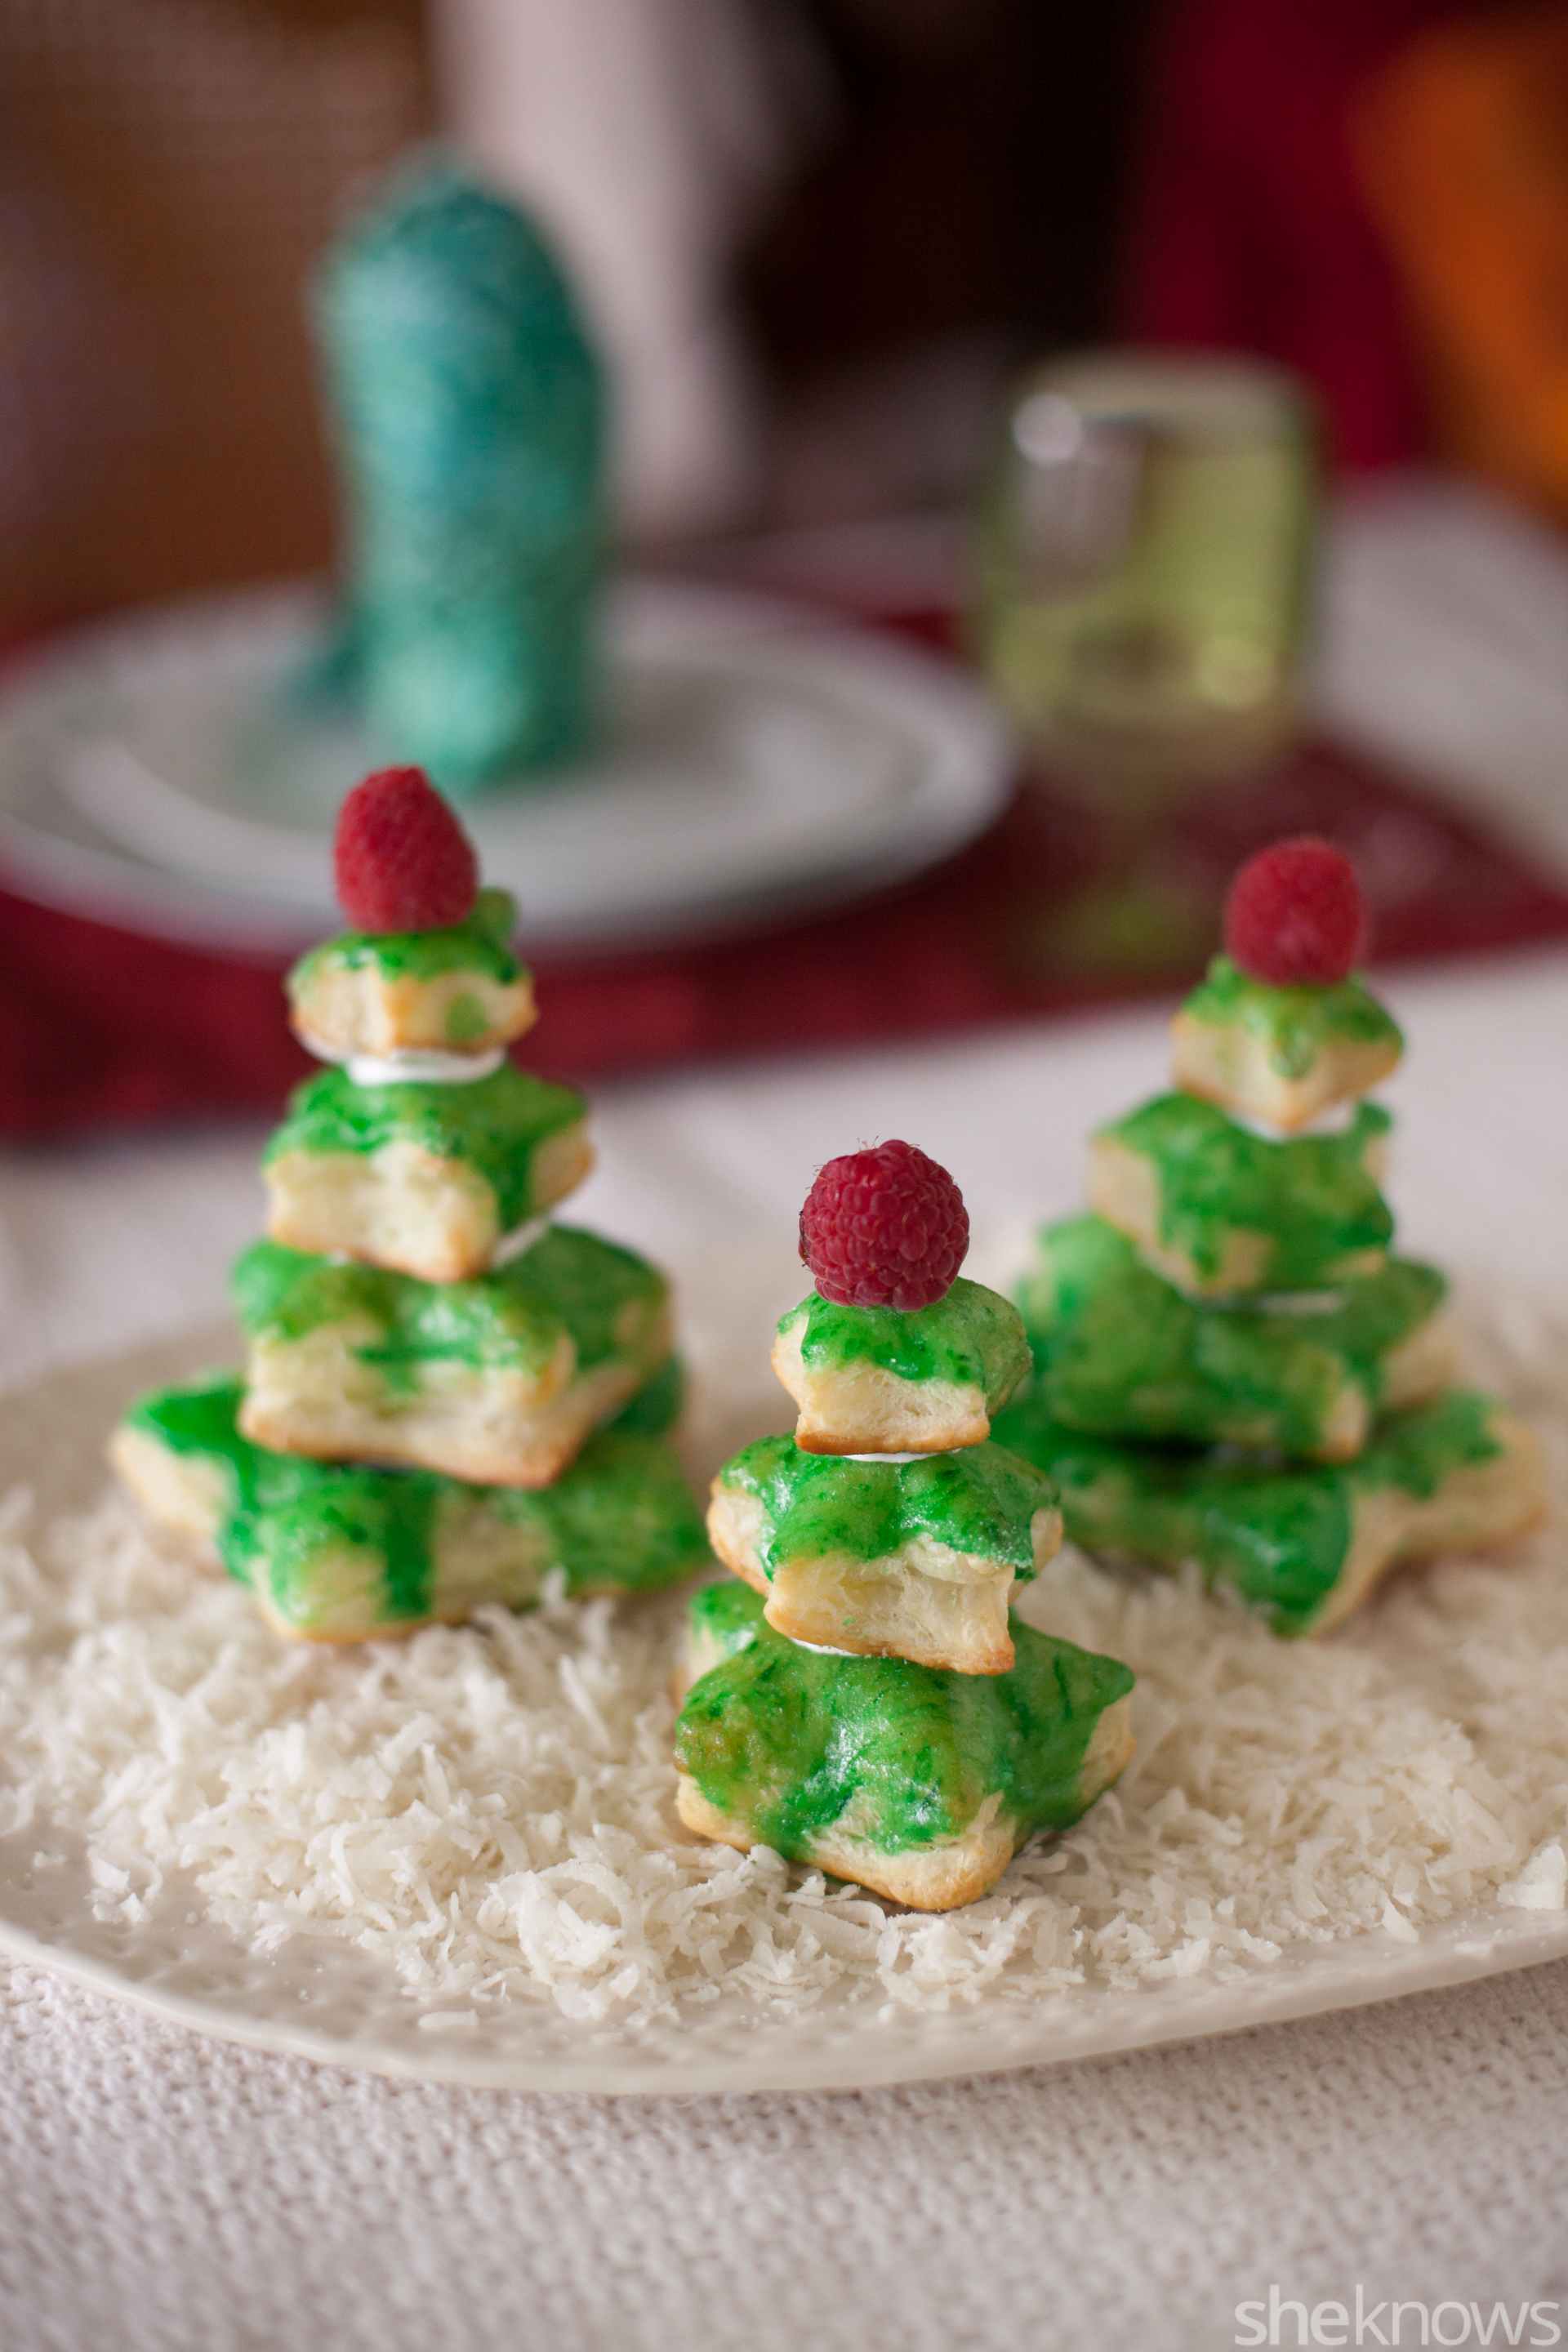 mini árboles de hojaldre decorados para navidad, centro de mesa DIY con ralladura de coco y pequeños arboles de hojaldre